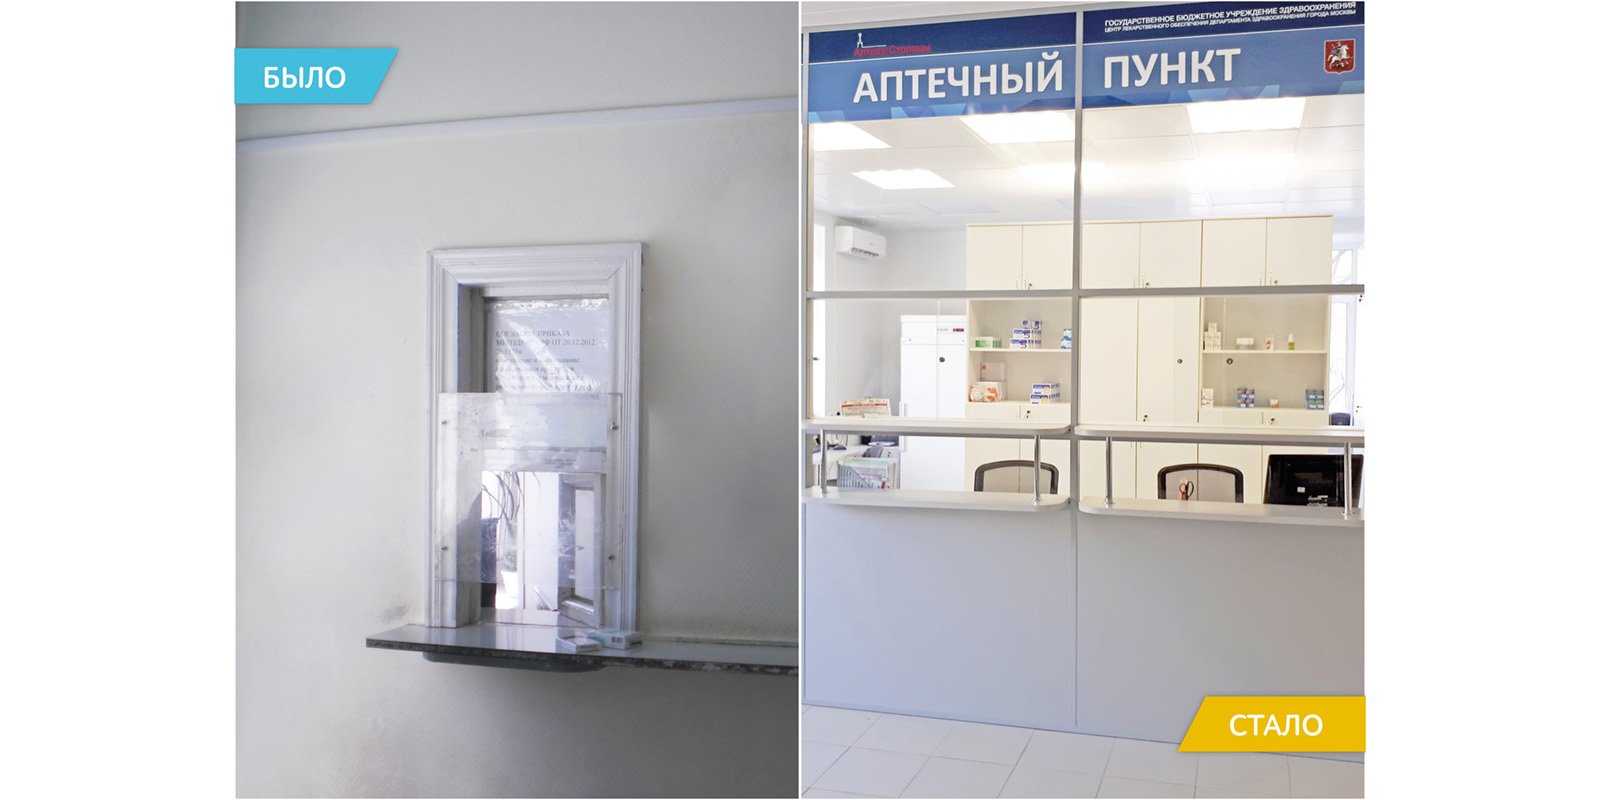 Аптечные пункты Москвы сделают комфортнее для посетителей